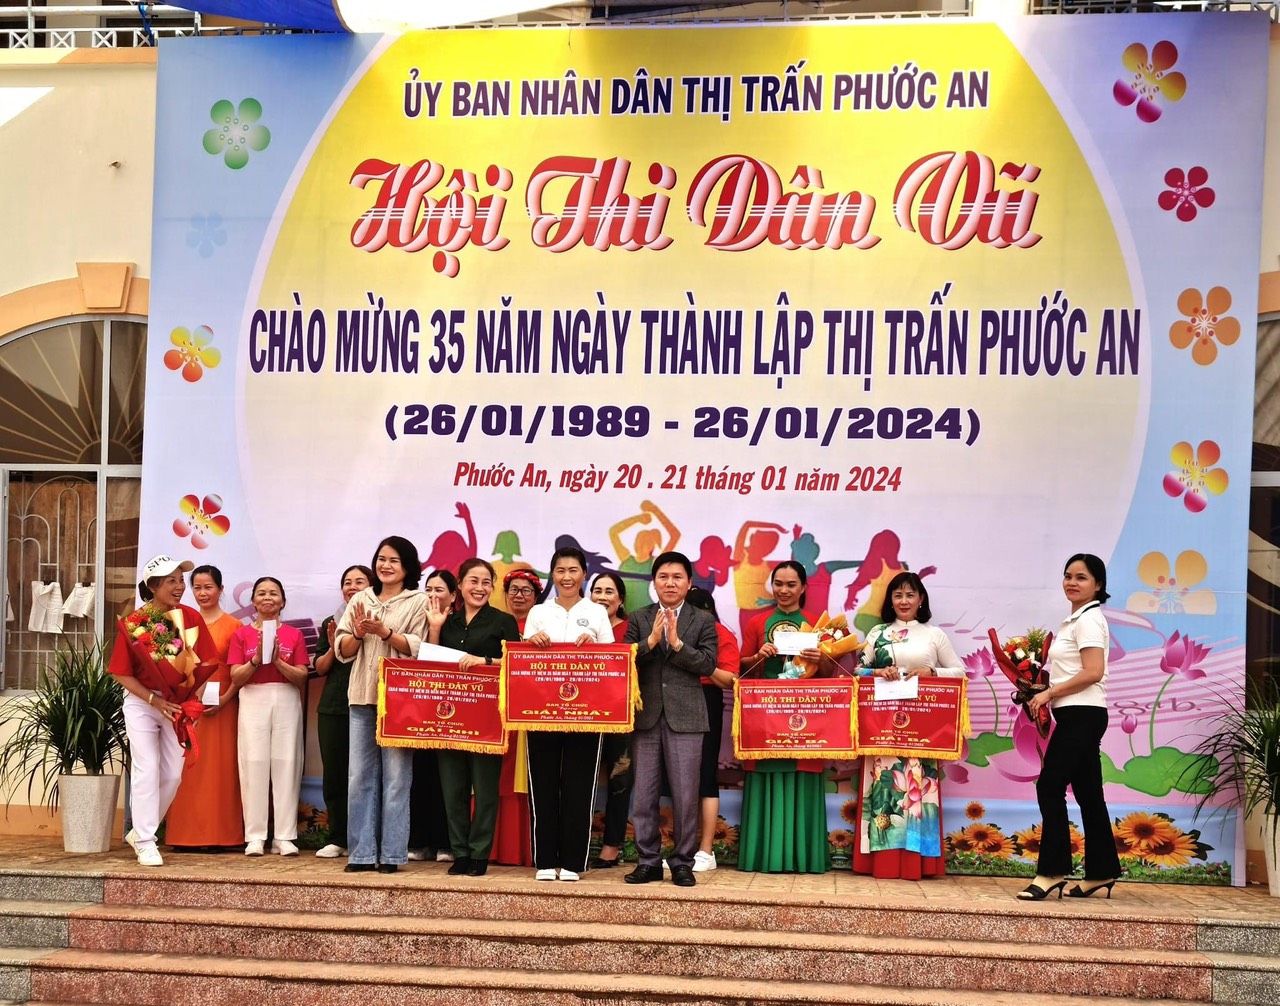 UBND thị trấn Phước An đã tổ chức Hội thi dân vũ chào mừng Kỷ niệm 35 năm ngày thành lập thị trấn Phước An (26/01/1989-26/01/2024).